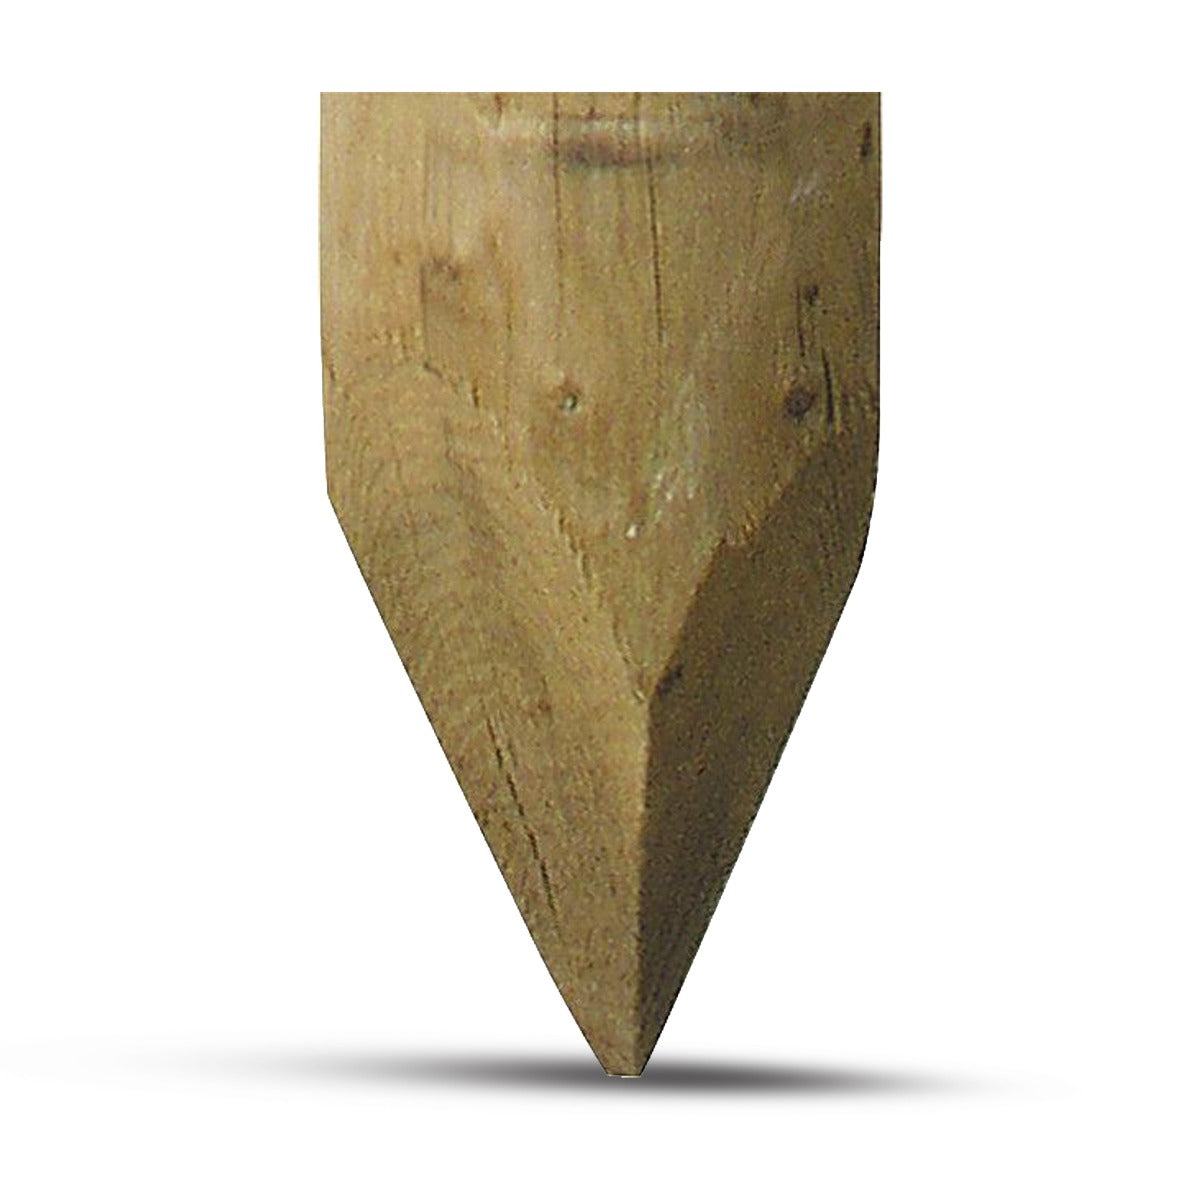 Holzpfosten, 2,25 m, imprägniert, gespitzt, d=16-18 cm